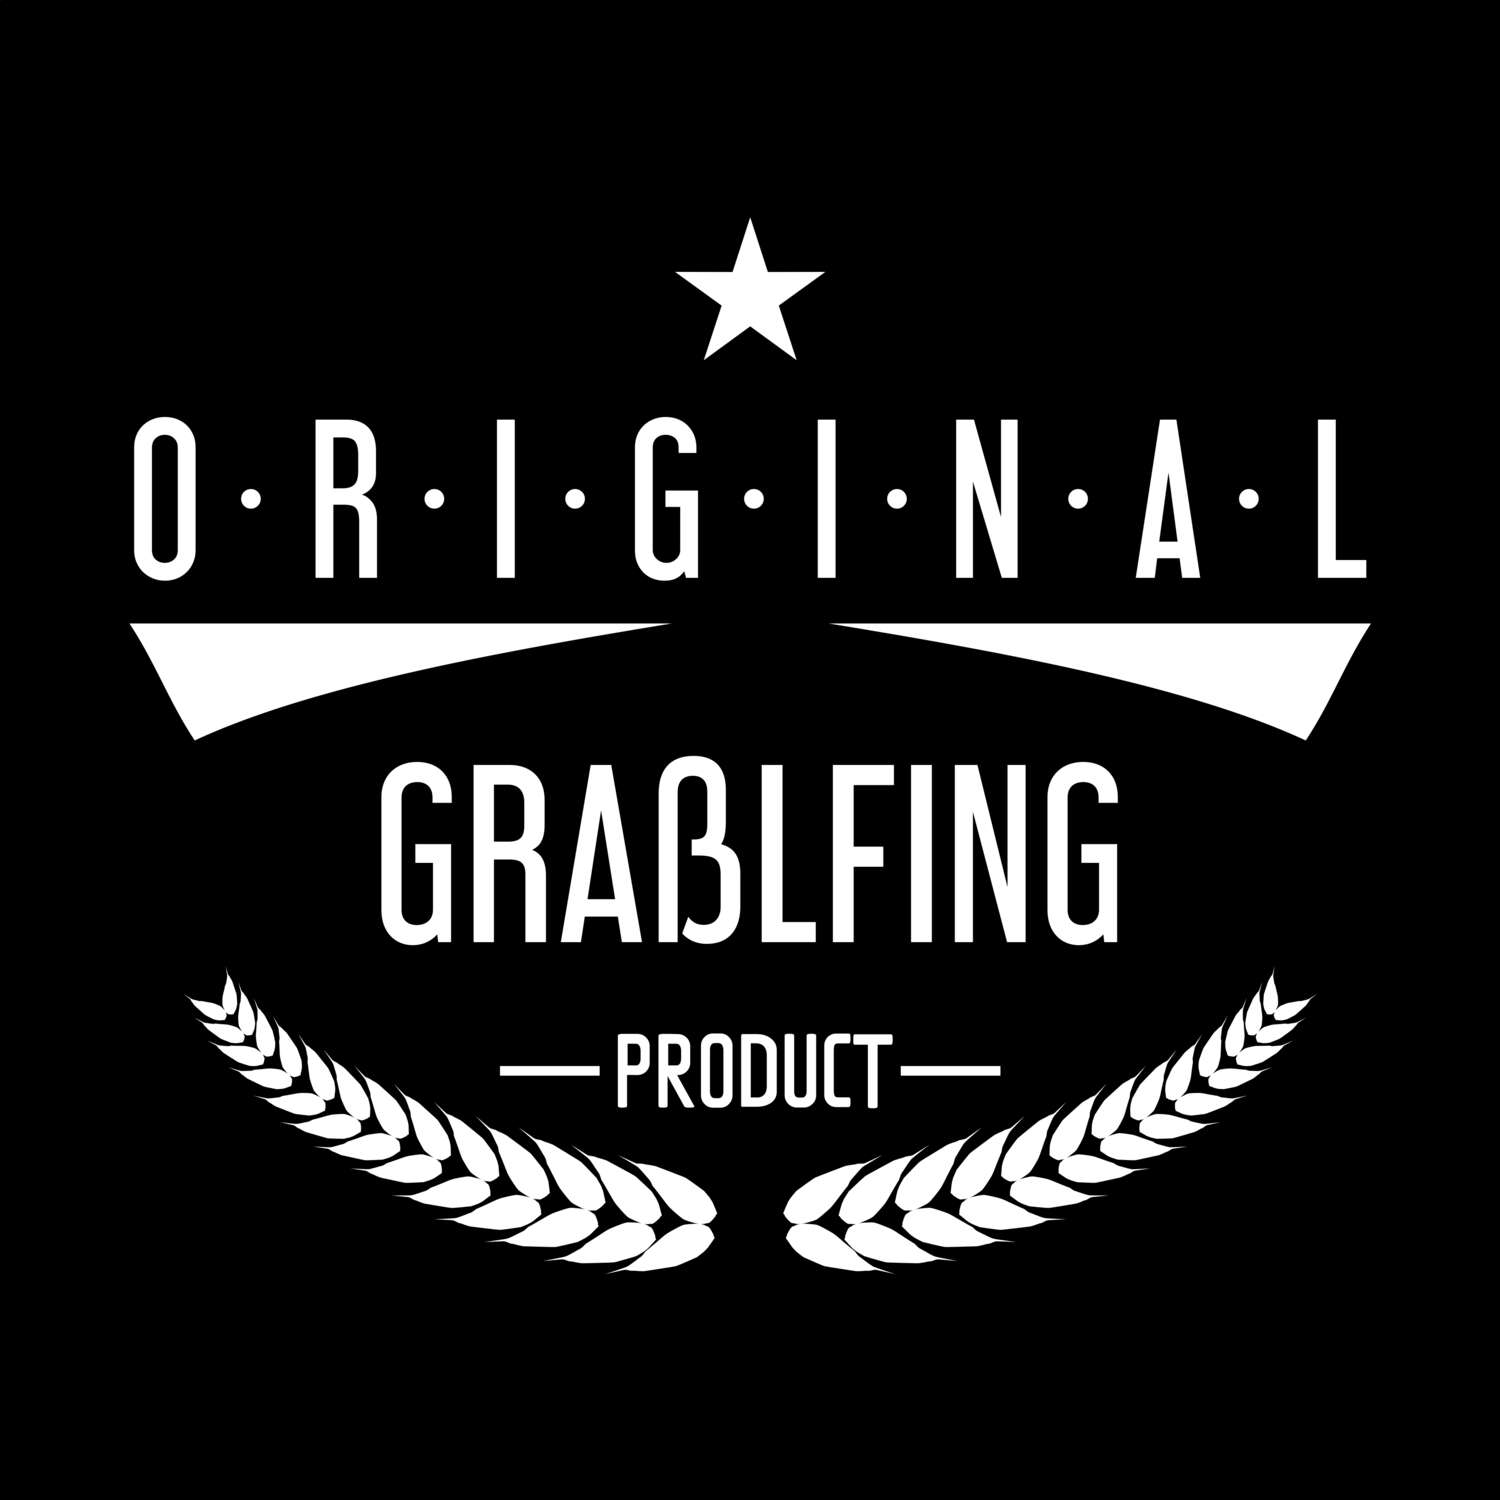 Graßlfing T-Shirt »Original Product«